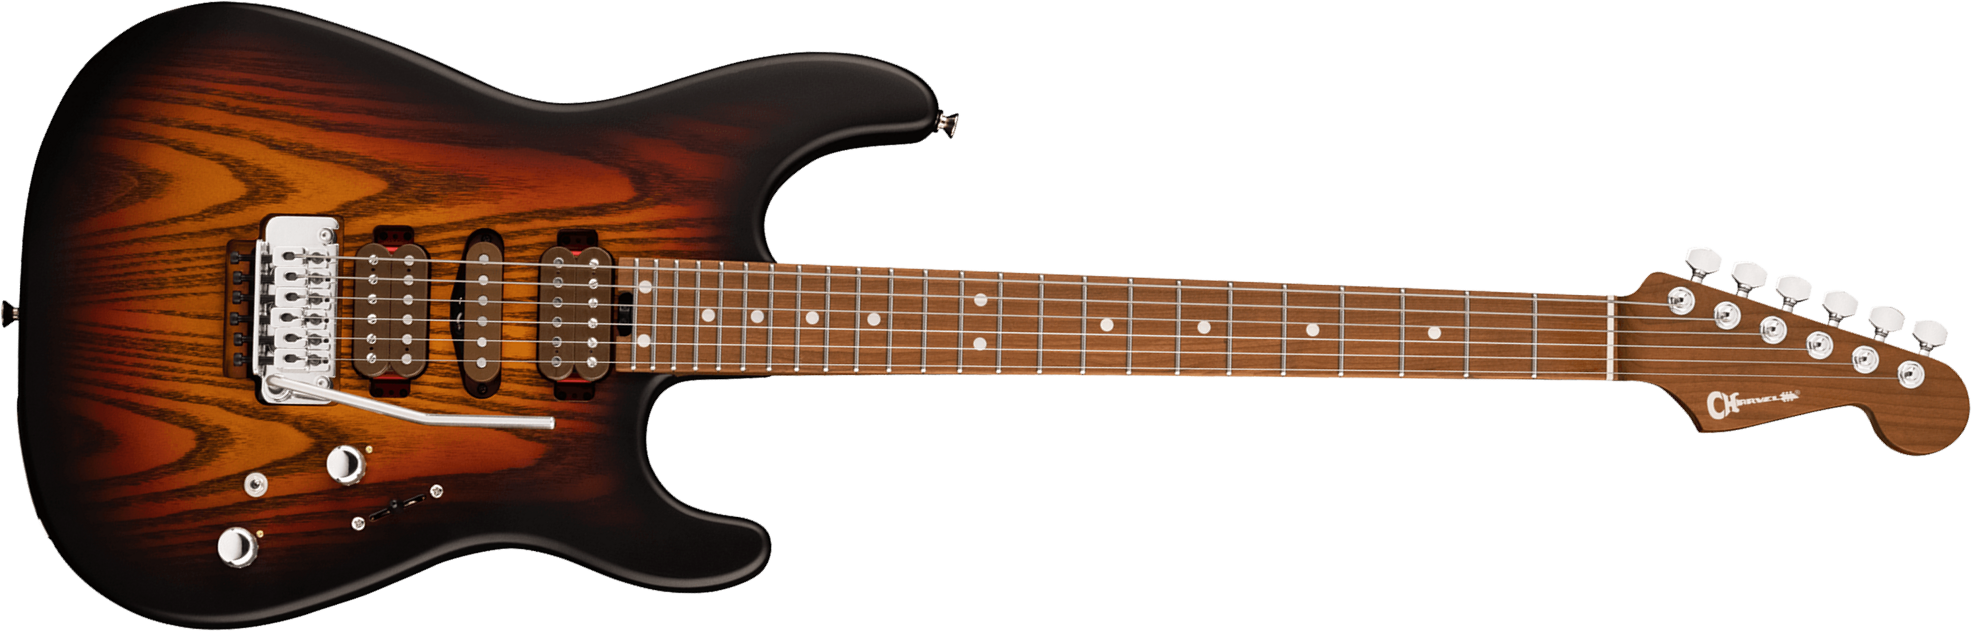 Charvel Guthrie Govan San Dimas Sd24 Cm Mj Jap Hsh Trem Mn - Three-tone Sunburst - Elektrische gitaar in Str-vorm - Main picture